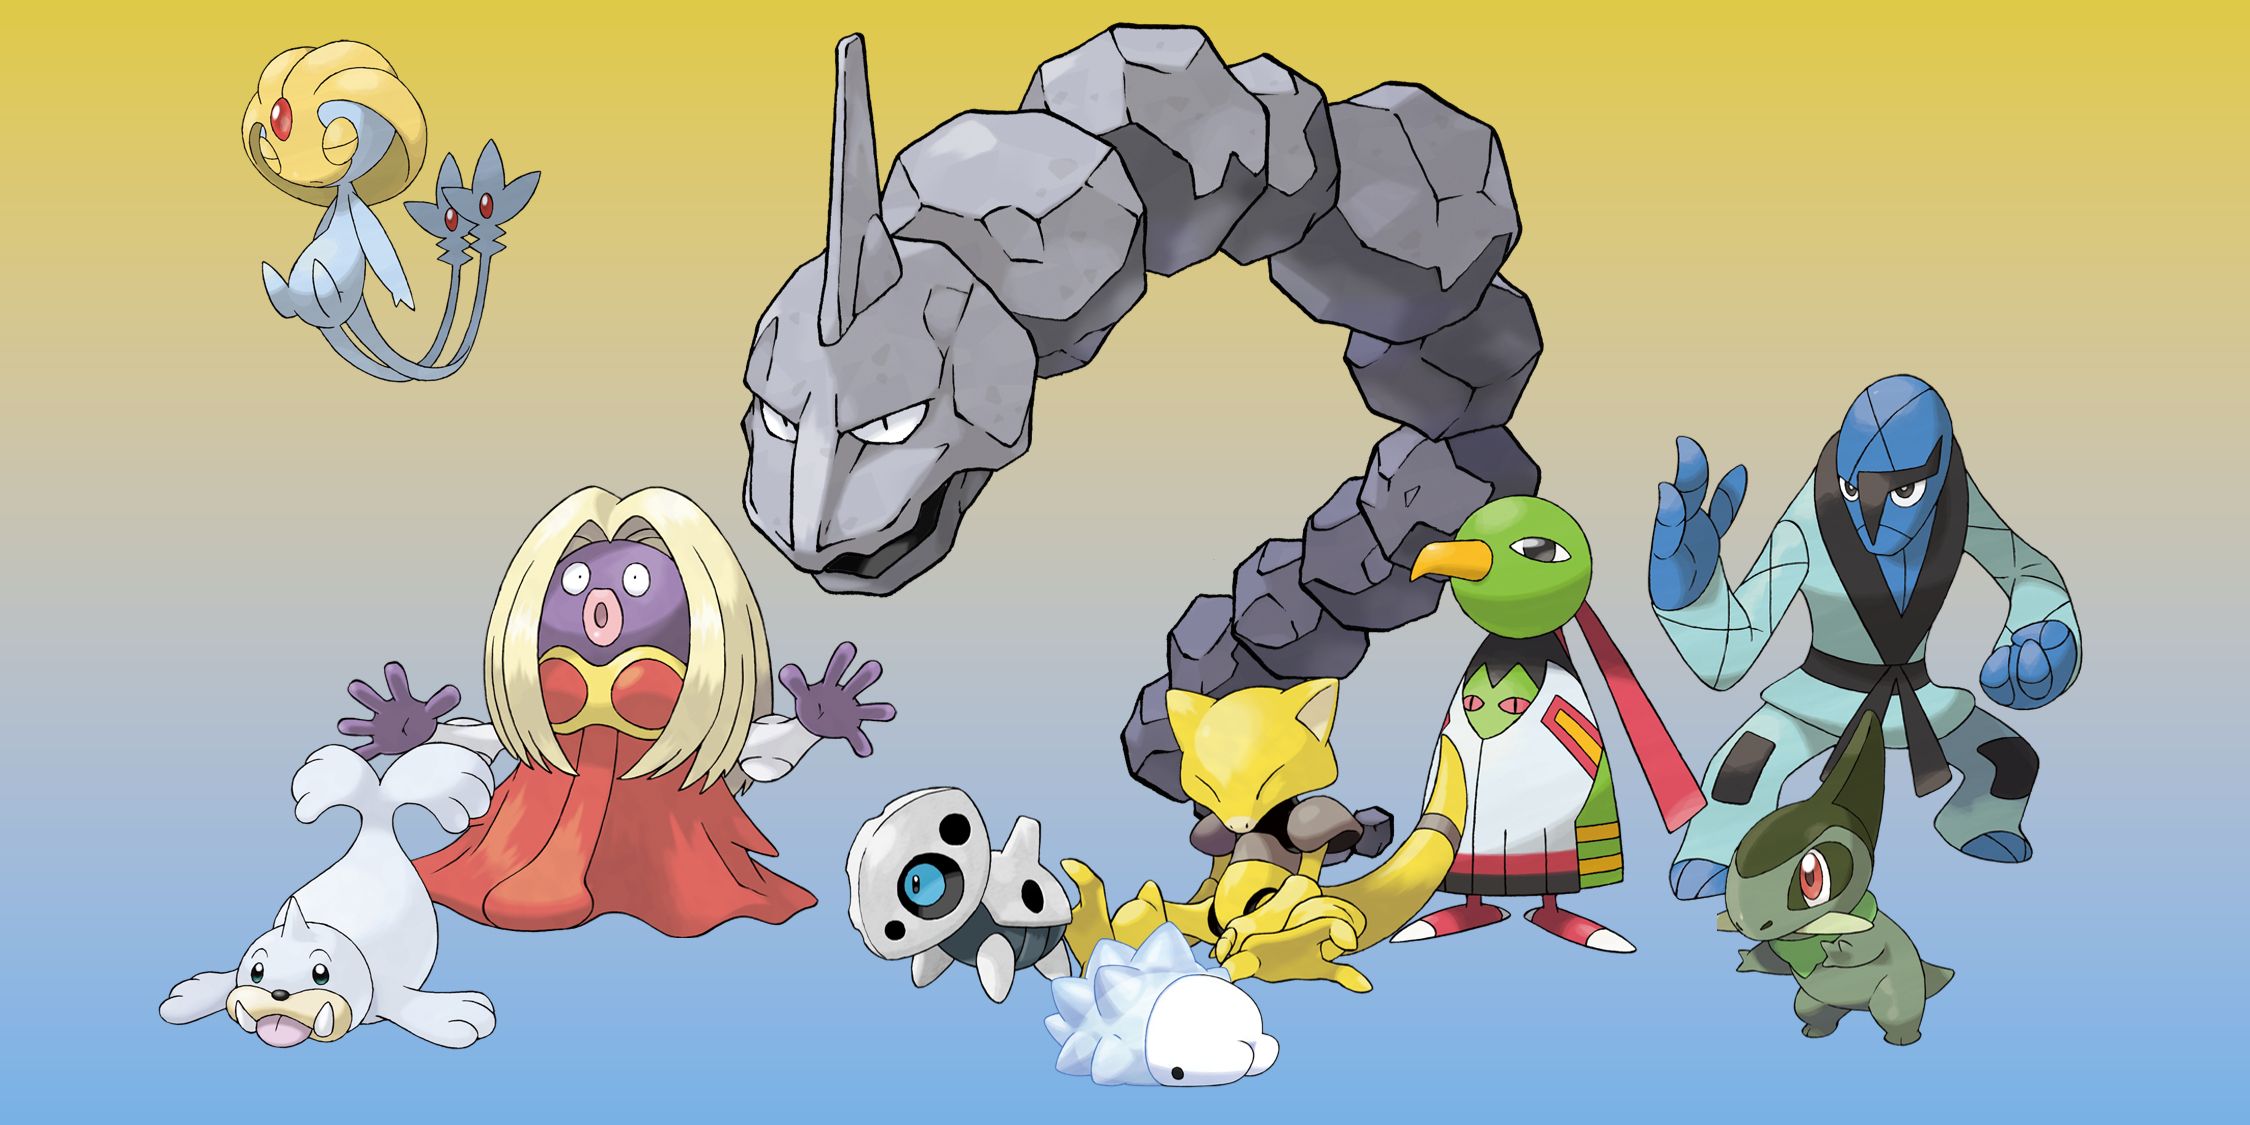 Pokemon with four-letter names: Onyx, Jinx, Yuxie, Zatu, Abra, Aron, Seal, Axeu, Salk, and Snom